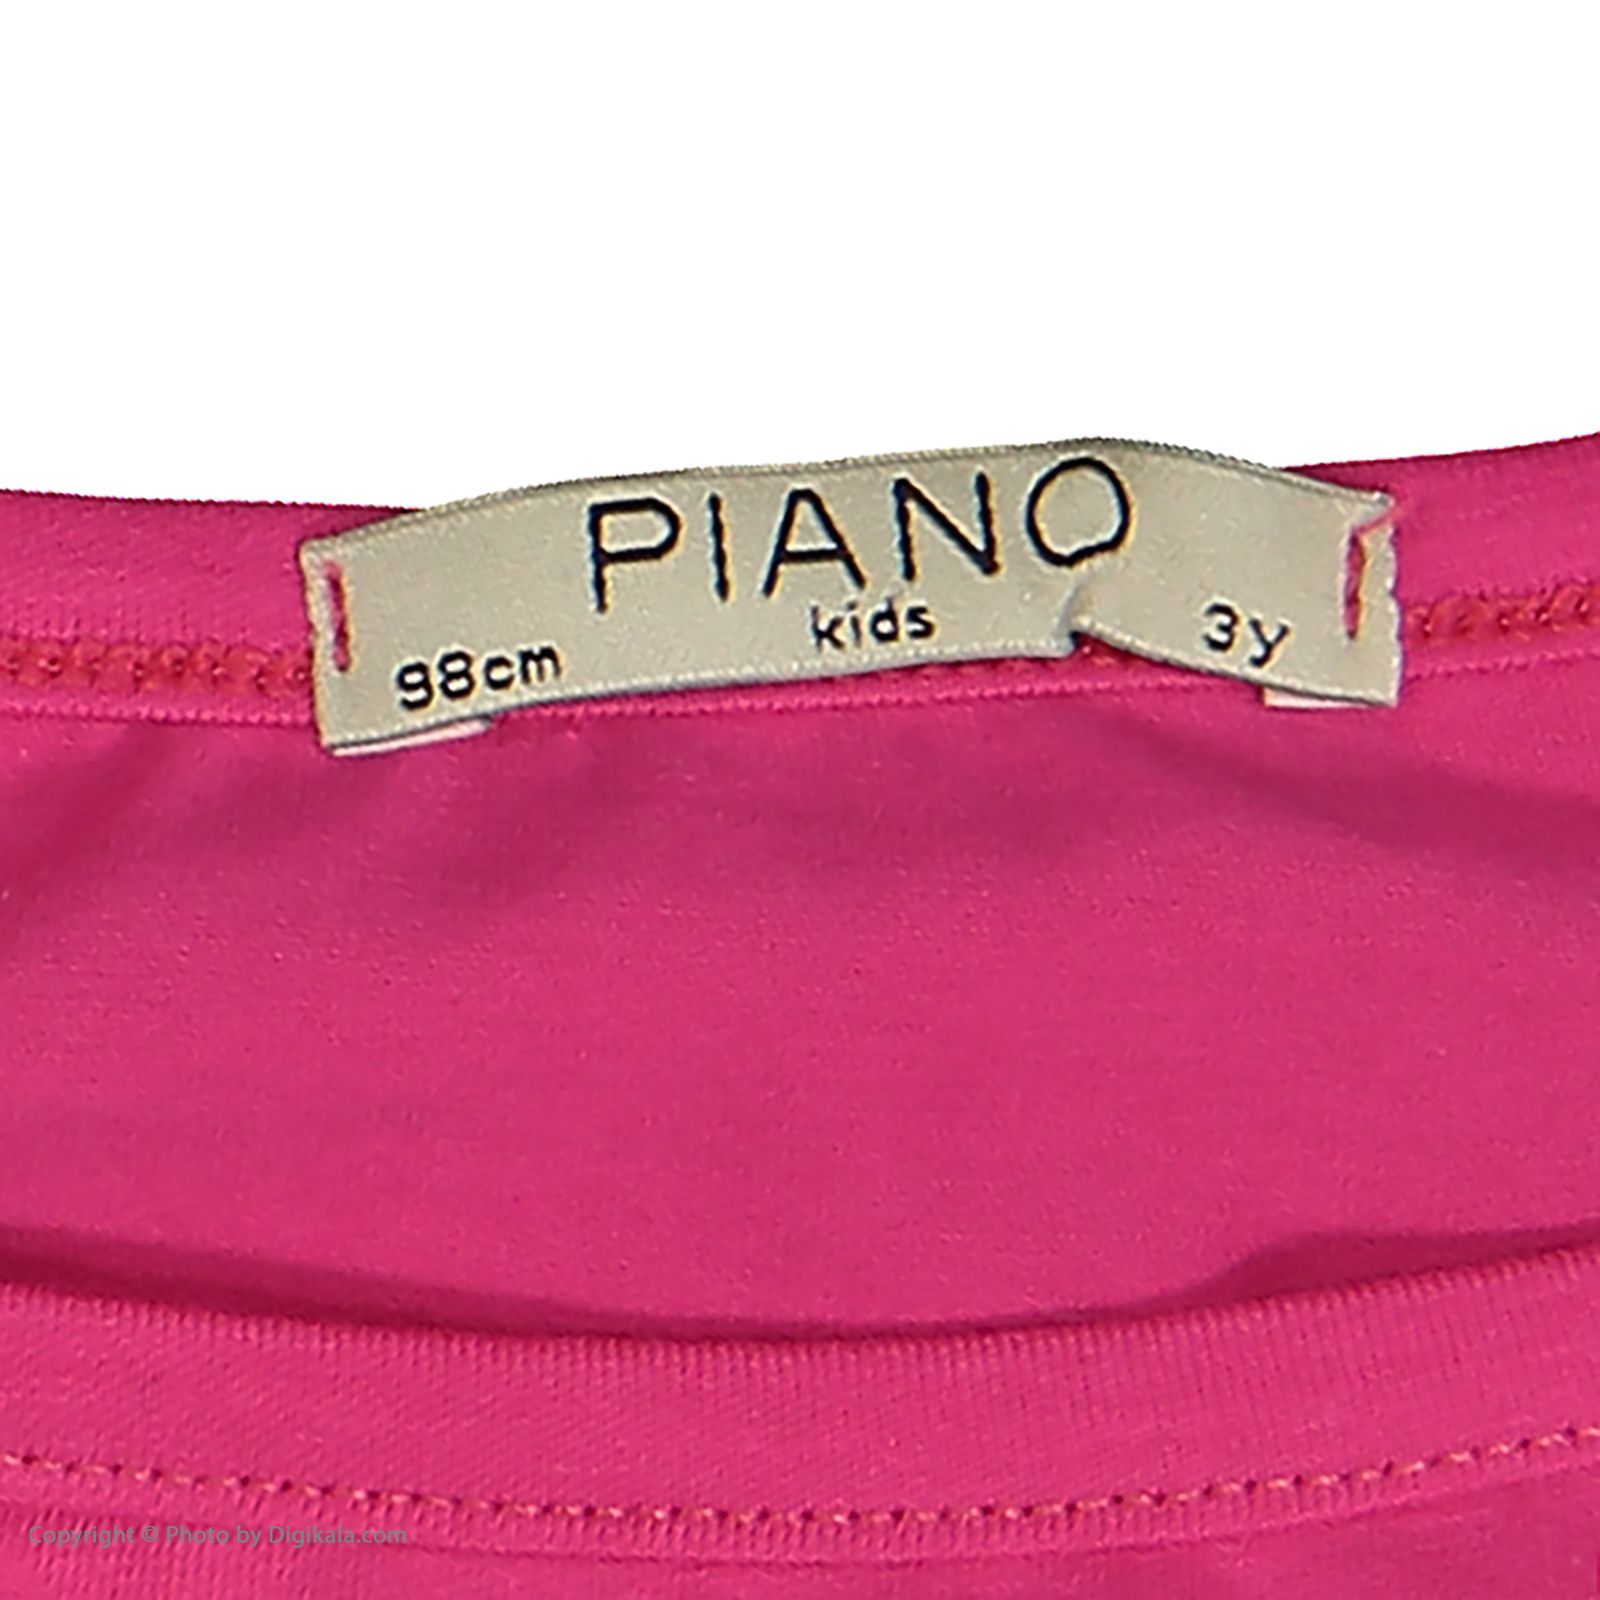 ست تاپ و نیم تنه دخترانه پیانو مدل 1864-66 -  - 9